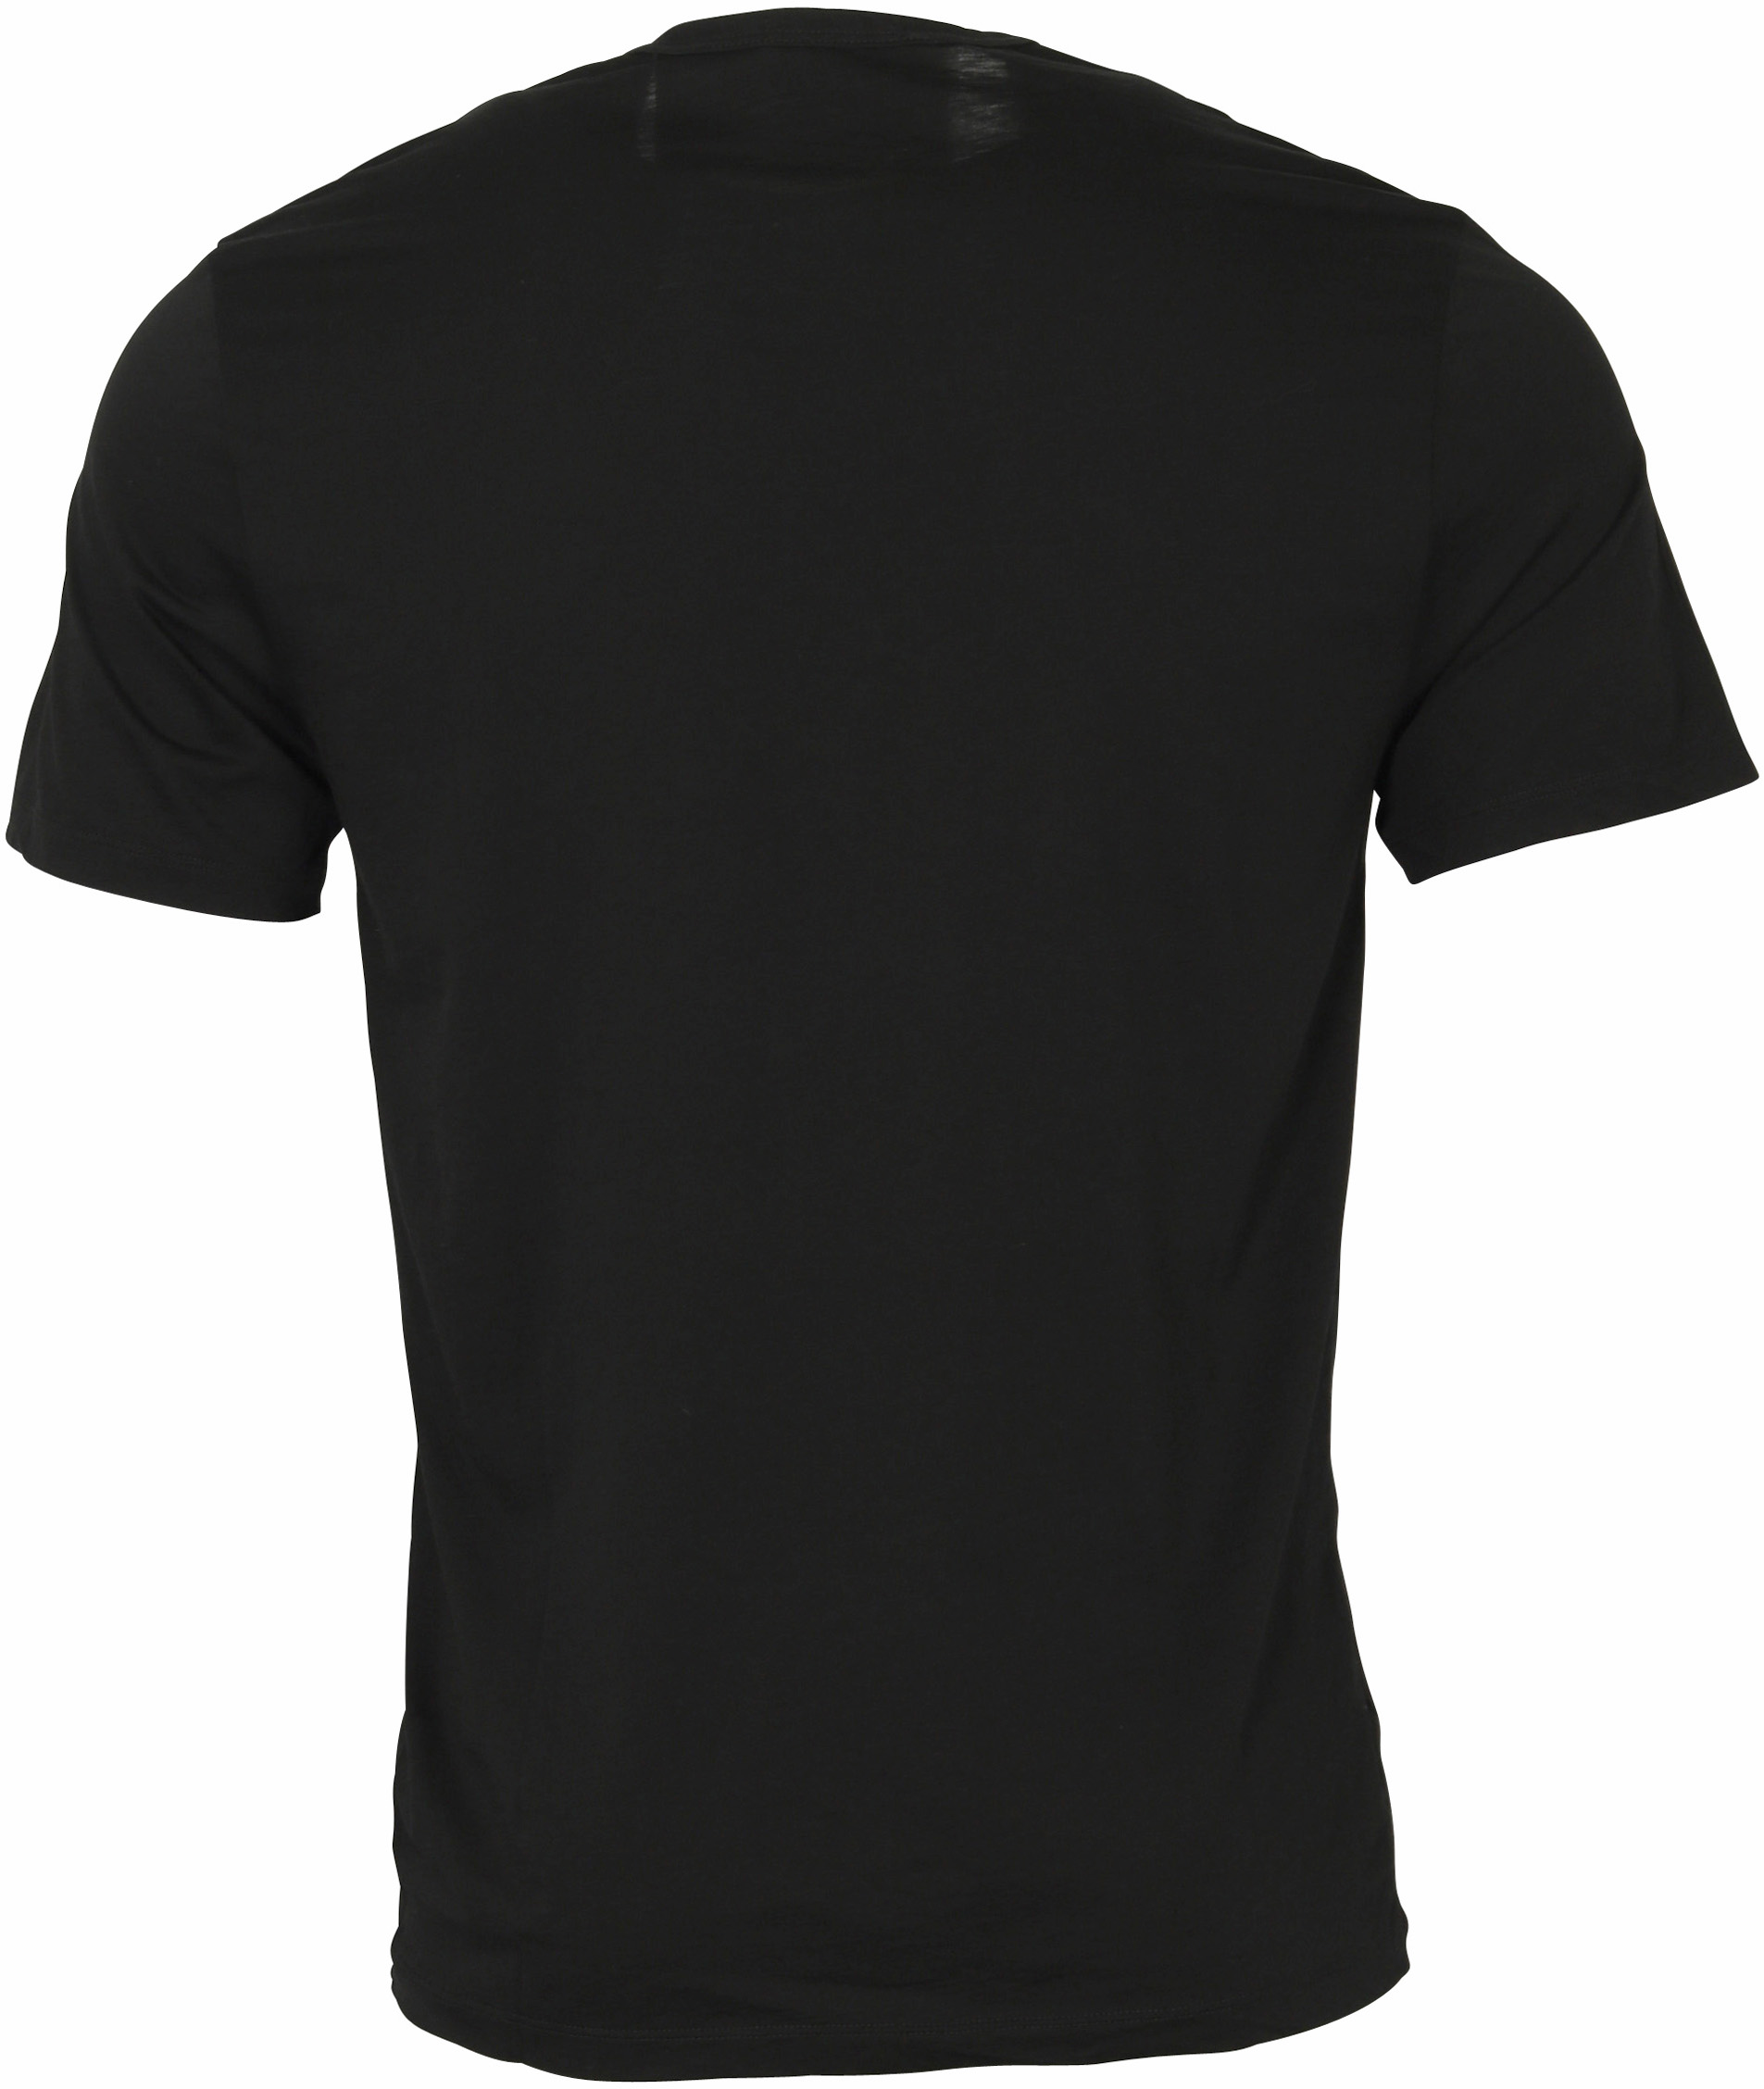 James Perse Cotton Cashmere T-Shirt Black S